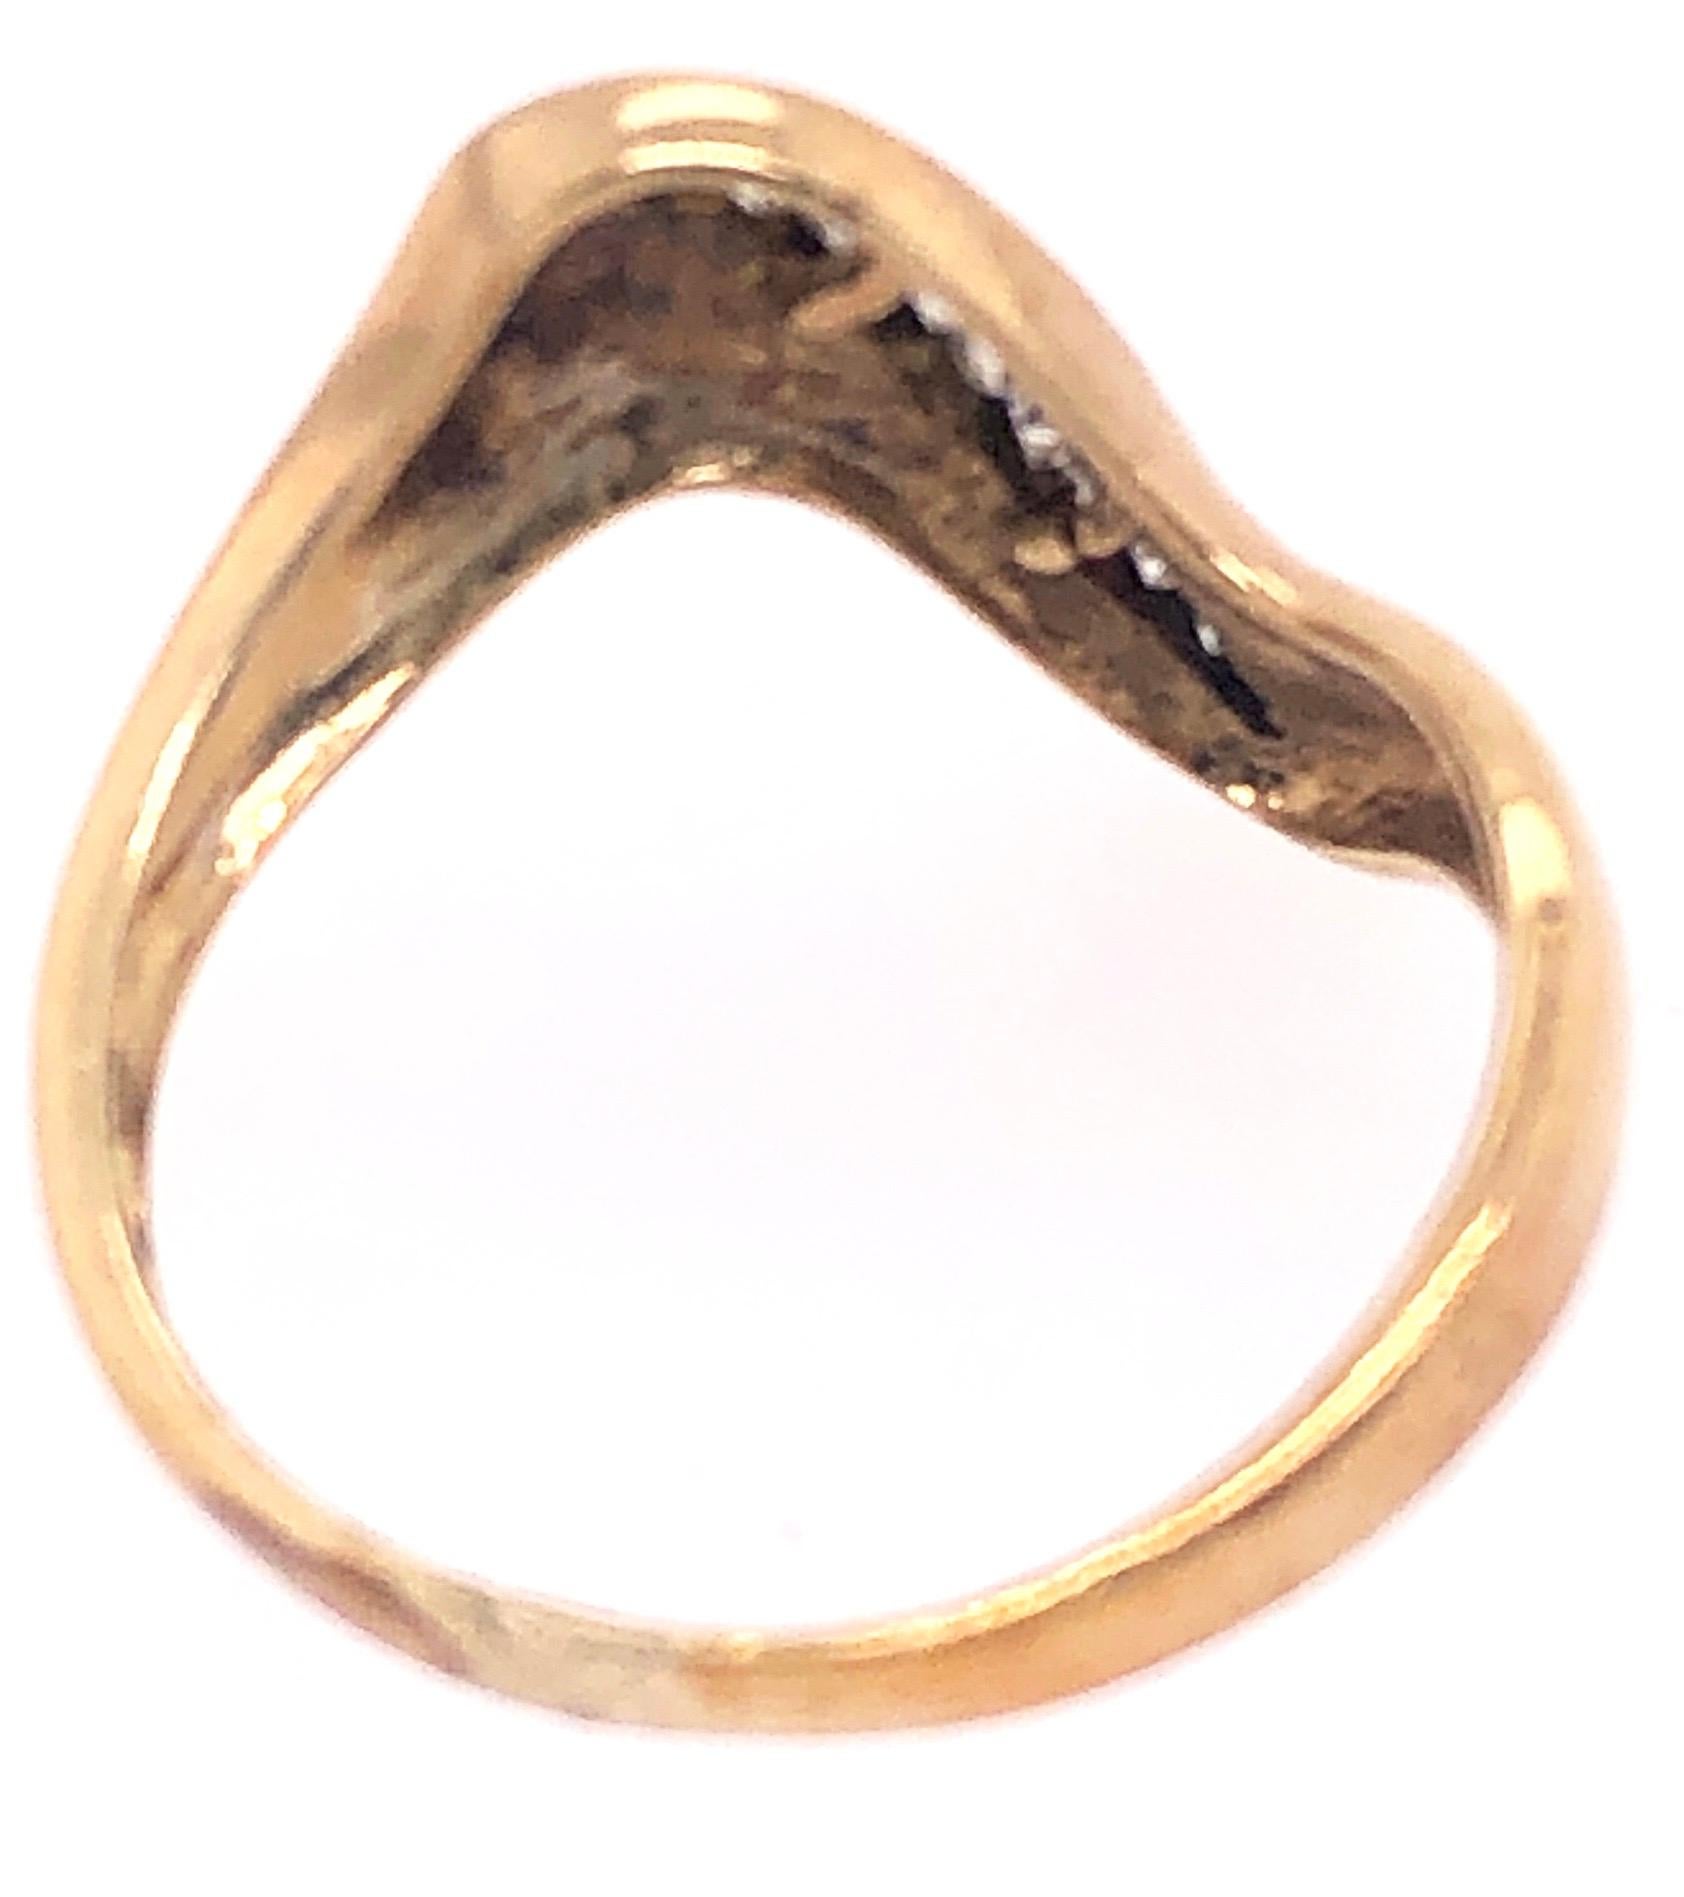 zeitgenössischer Ring aus 18 Karat Gelbgold mit Diamanten.
Größe 6
2.50 Gramm Gesamtgewicht.